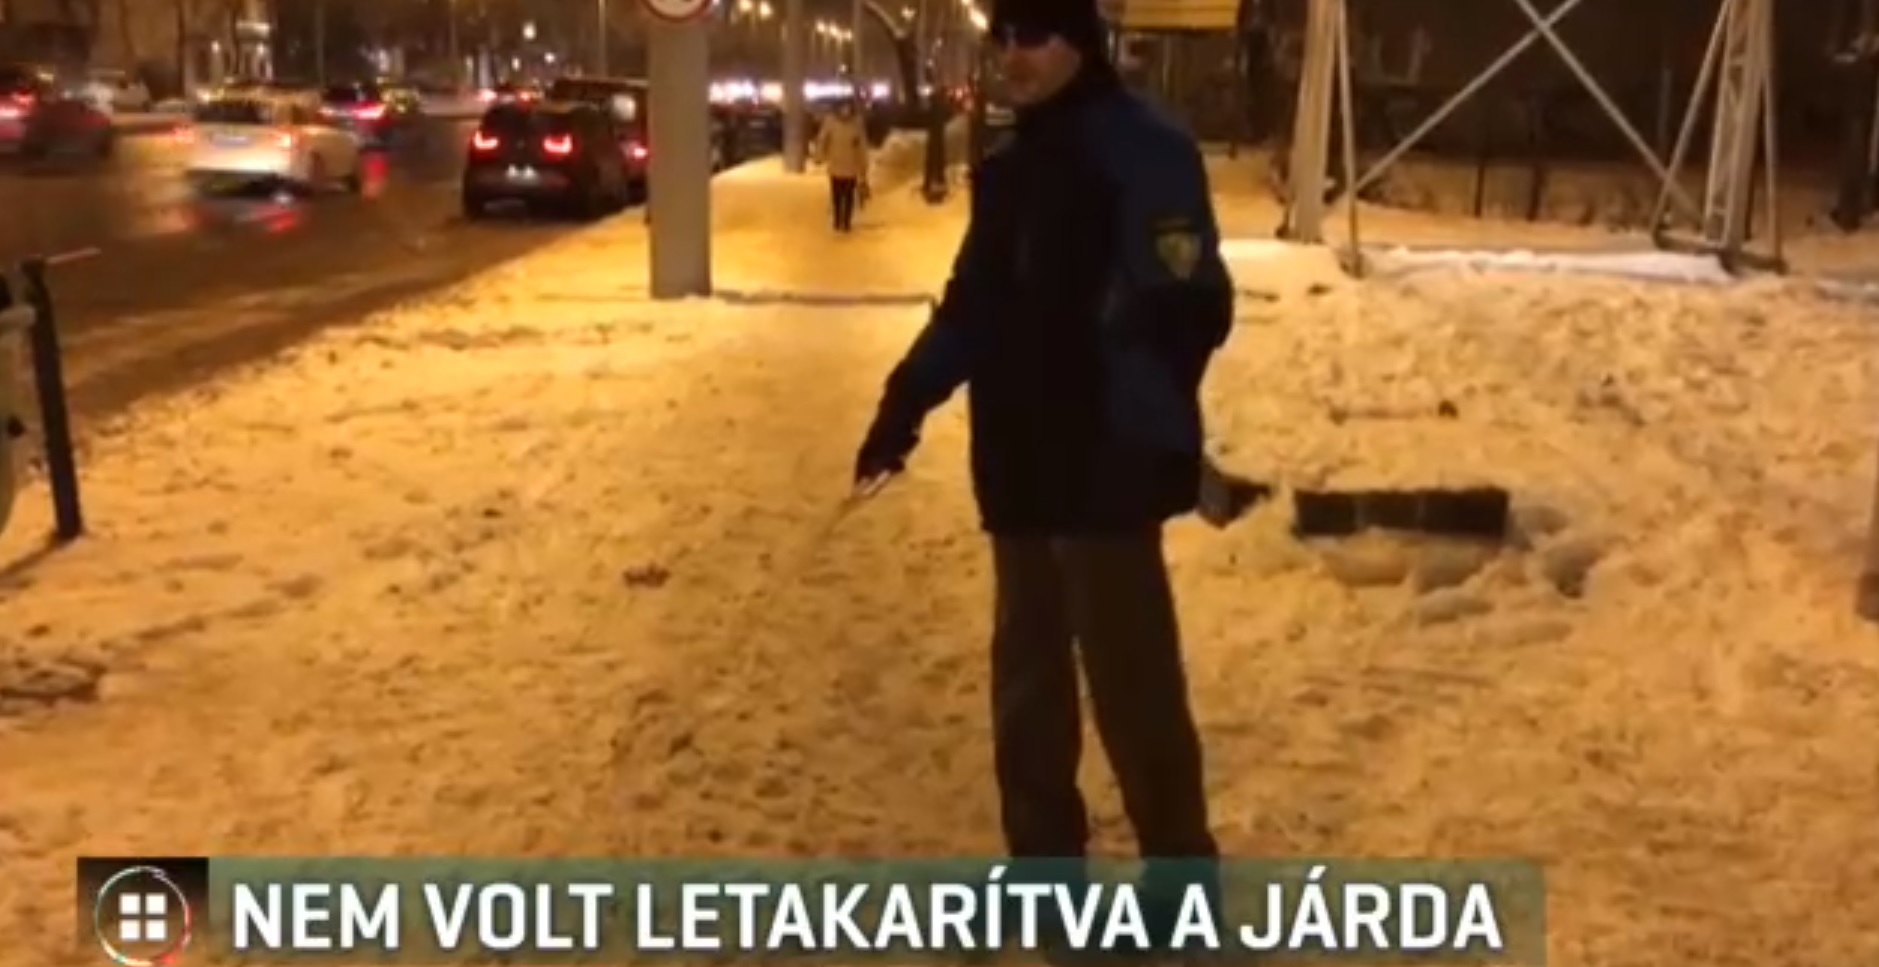 Nem volt letakarítva a havas járda, ezért egy látássérült férfi tévedésből felsétált a Hungária körútra